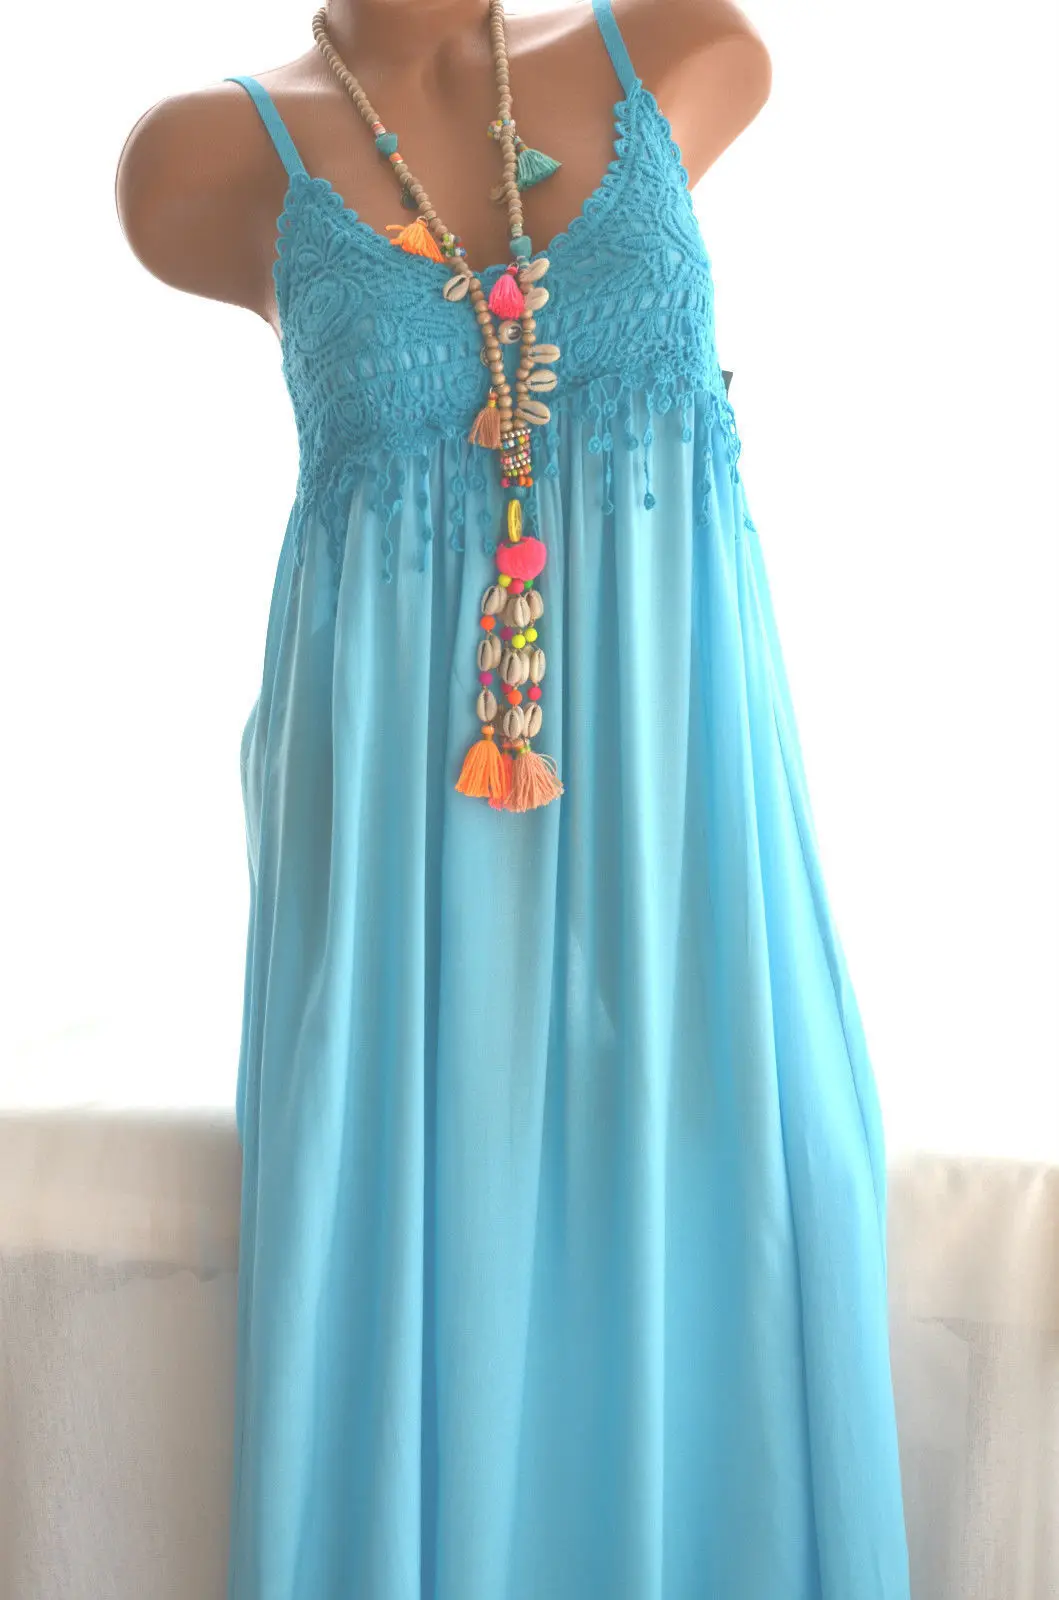 Женское платье на подтяжках большого размера летнее Новое Кружевное шифоновое платье 5XL